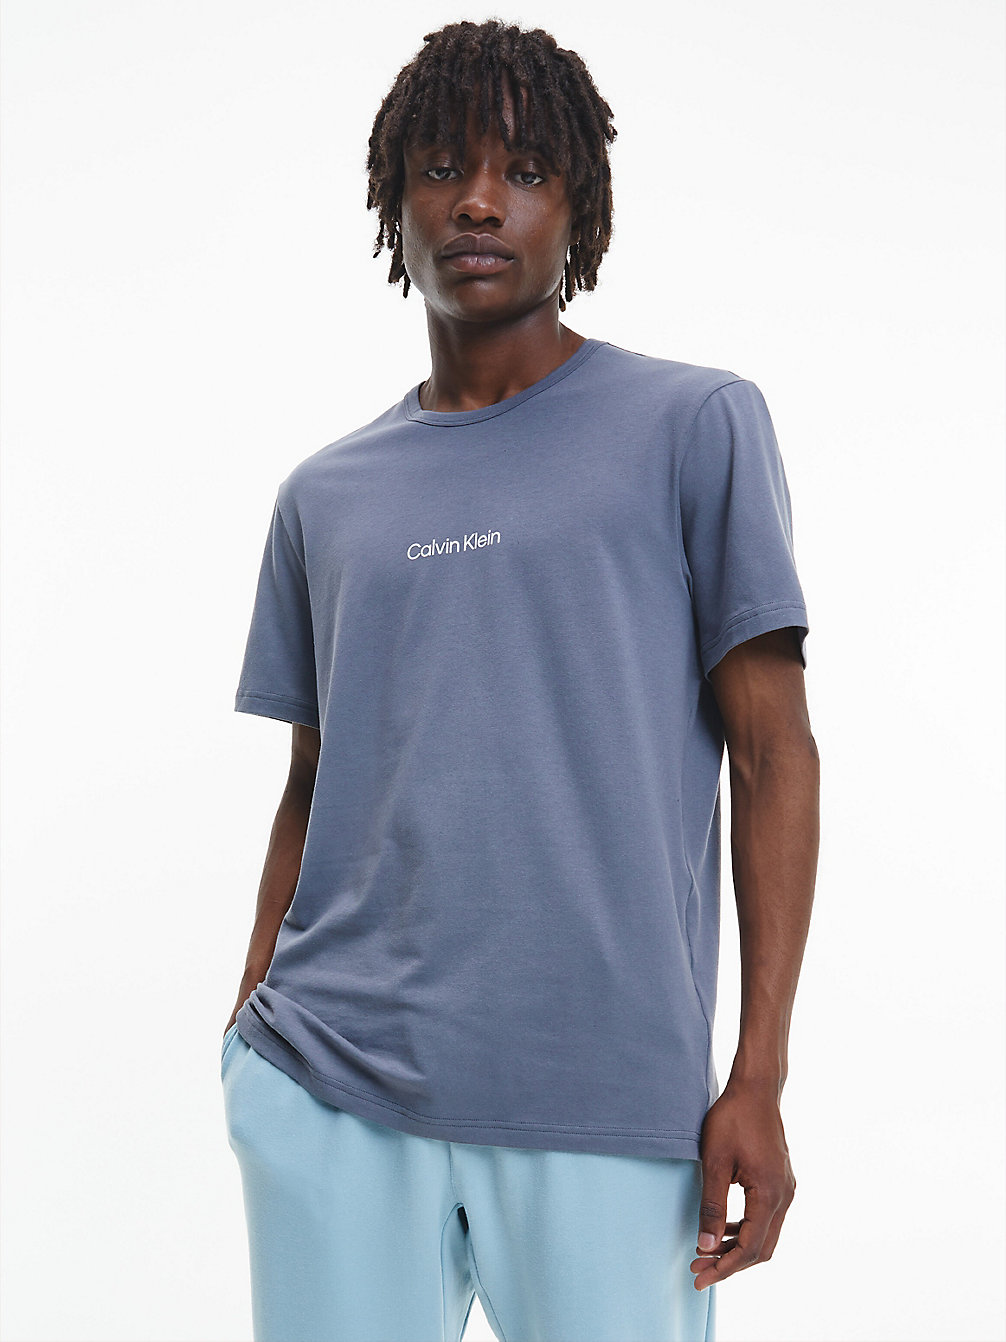 SLEEK GREY Lounge T-Shirt - Modern Structure undefined heren Calvin Klein